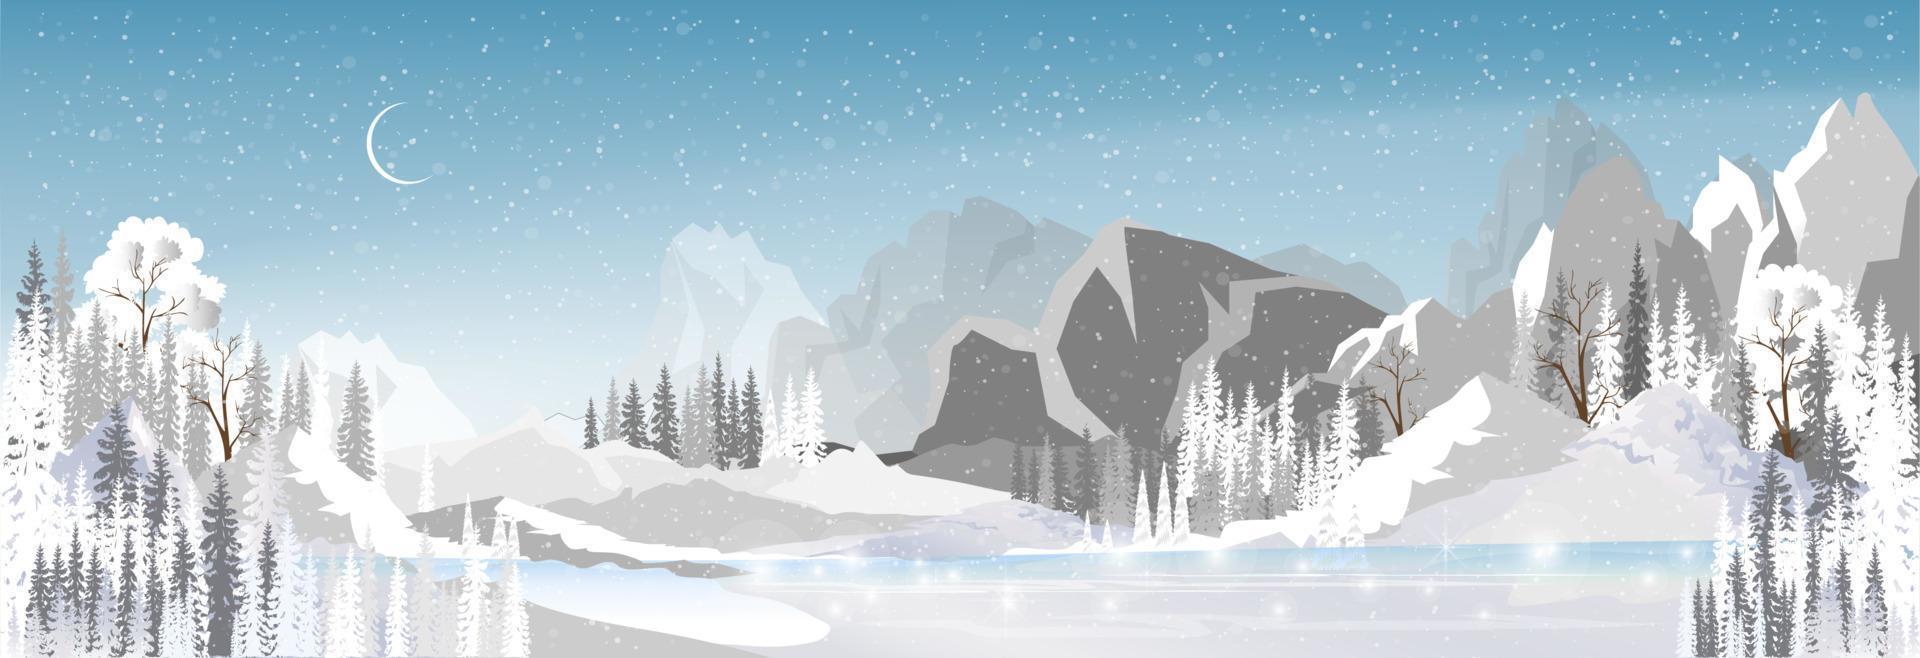 winter wonderland landschap door de meer met Woud pijnboom boom, magisch nacht winter met halve maan maan en sneeuw vallend van blauw hemel, vector horizon mooi natuurlijk voor Kerstmis vakantie achtergrond